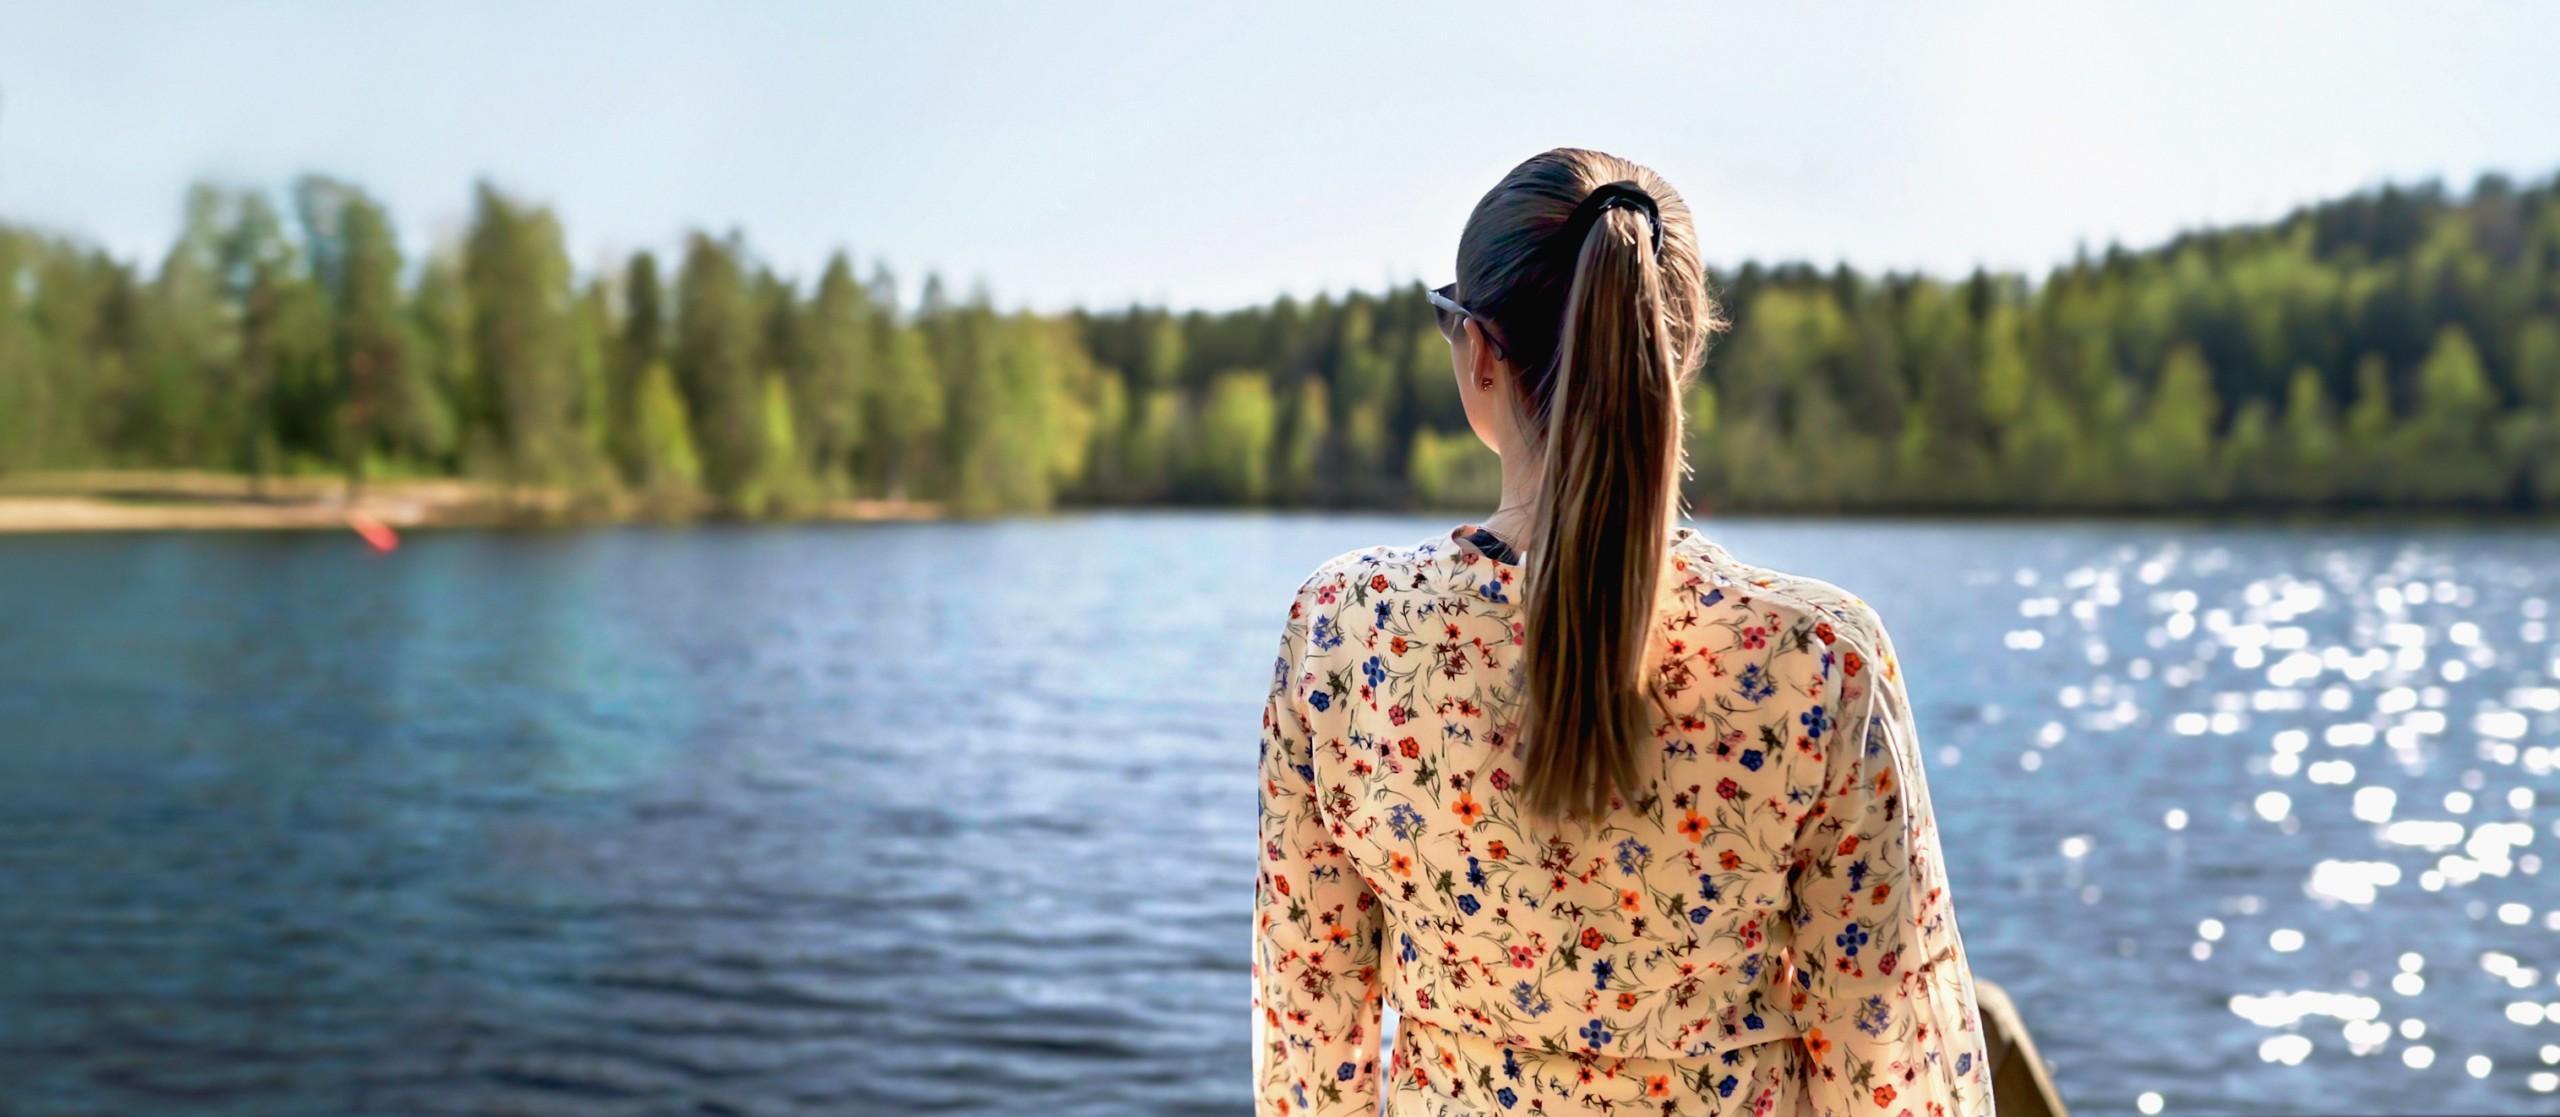 Nuori nainen katsoo suomalaista järvimaisemaa selin kuvaajaan